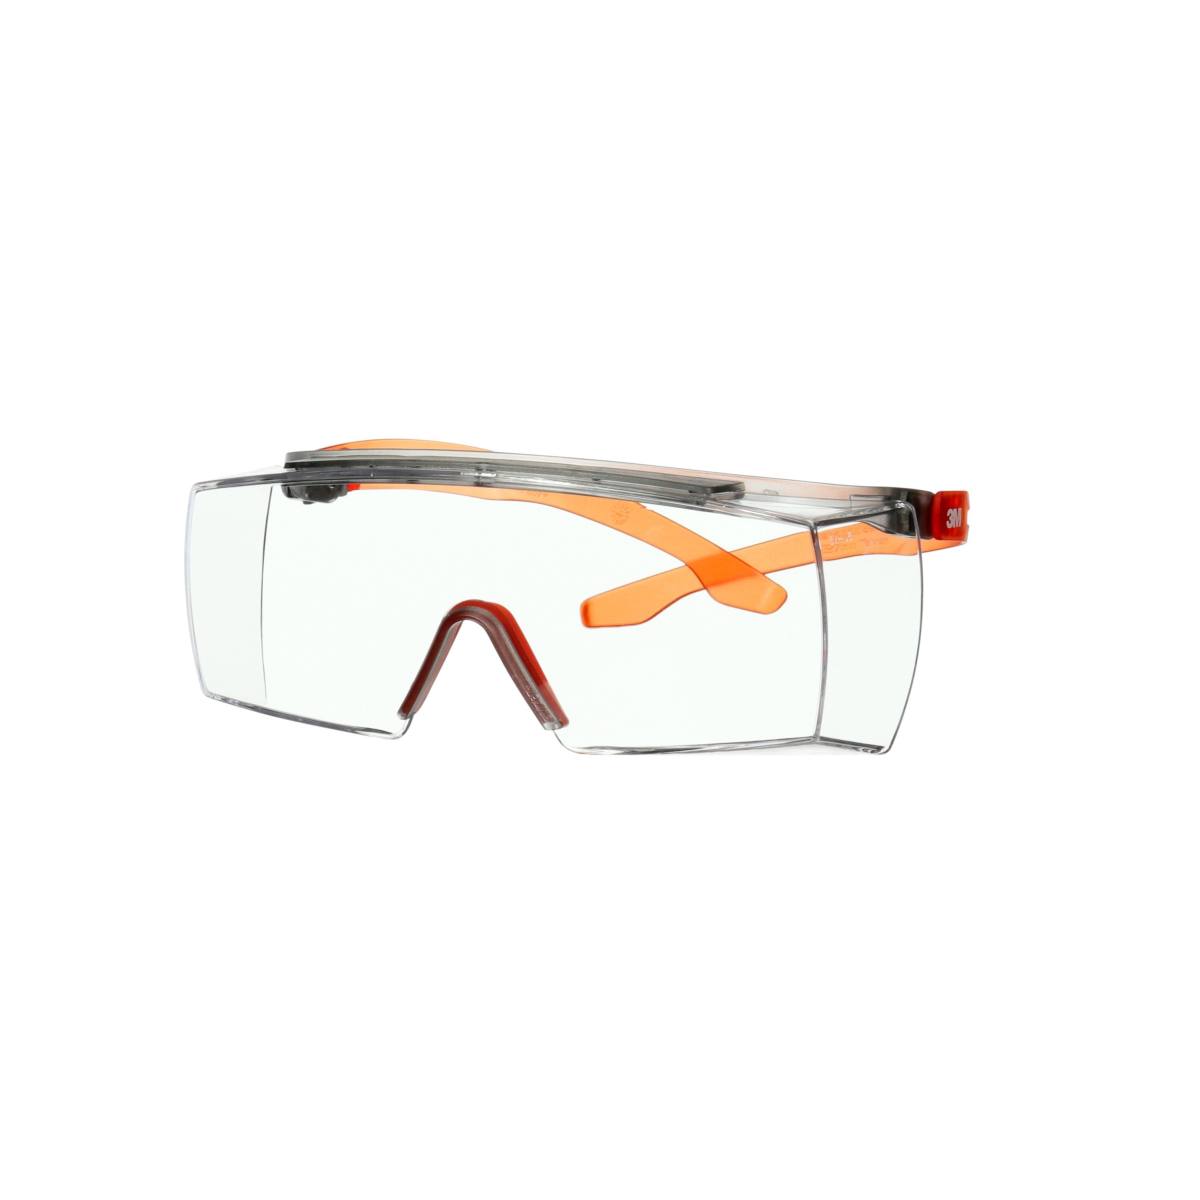 3M SecureFit 3700 over spectacles, orange temples, Scotchgard anti-fog coating (K&amp;N), clear lens, angle-adjustable, SF3701SGAF-ORG-EU